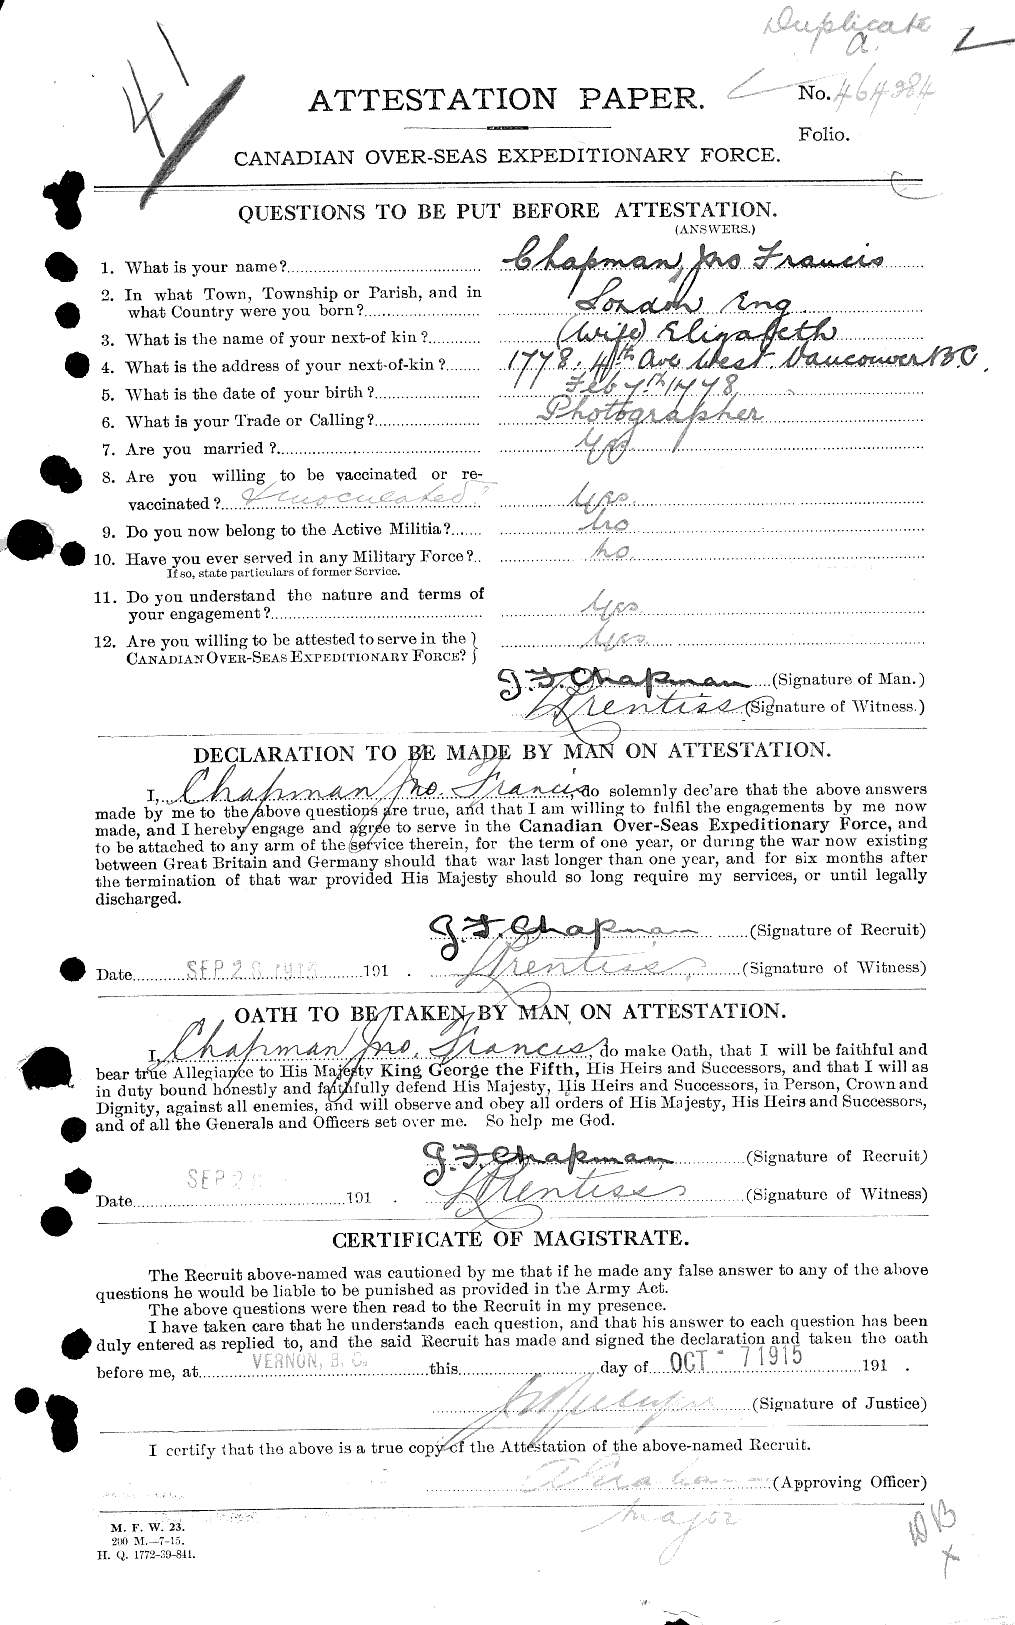 Dossiers du Personnel de la Première Guerre mondiale - CEC 014110a